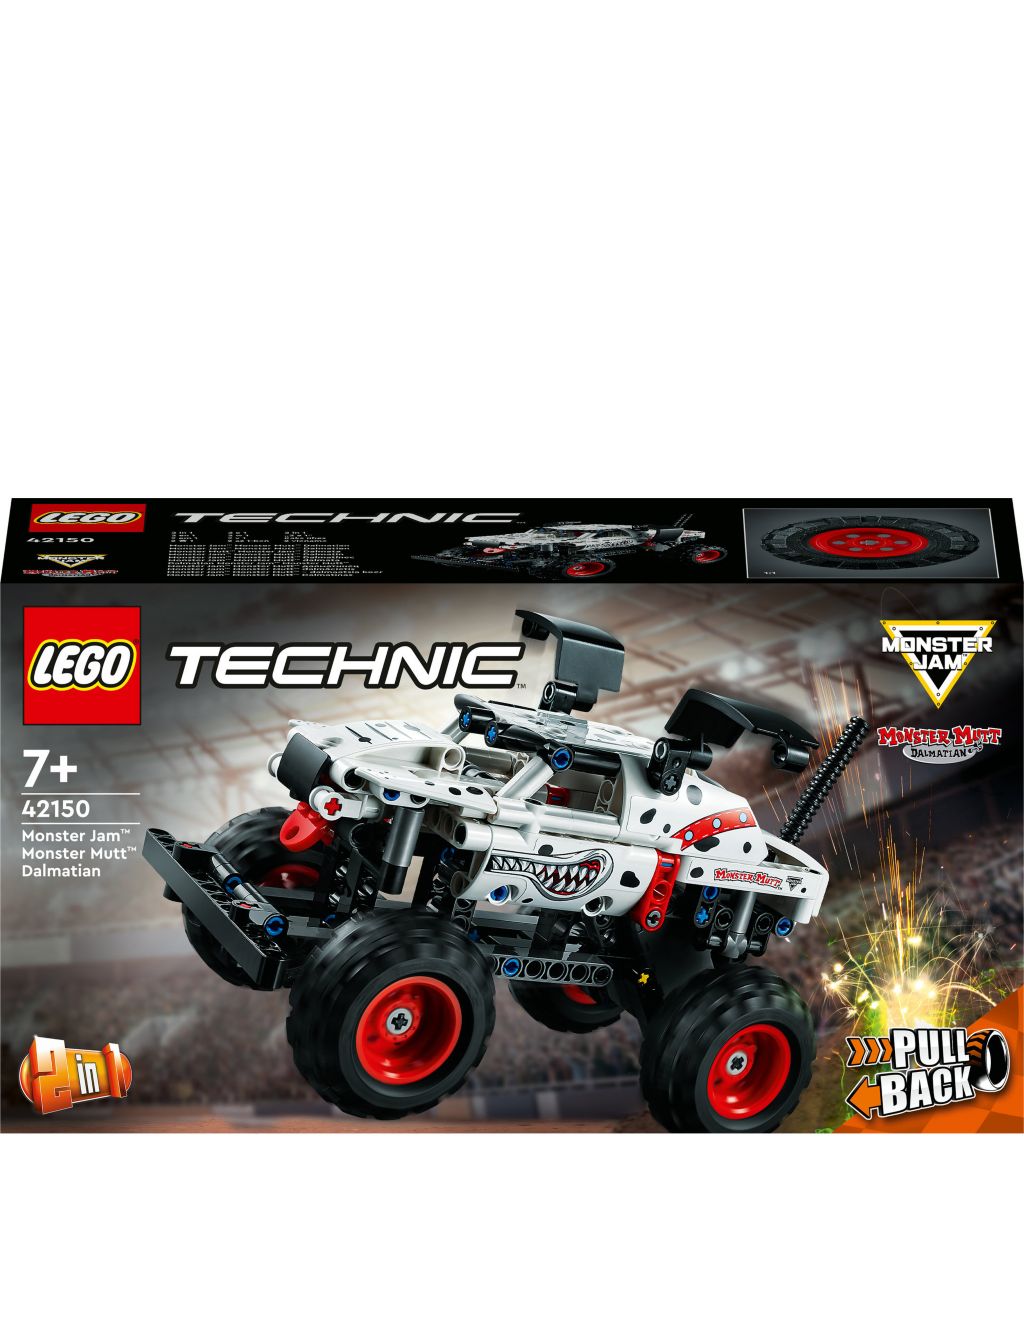 LEGO Technic Monster Jam Monster Mutt Dalmatian 42150 (7+ Yrs) 2 of 6